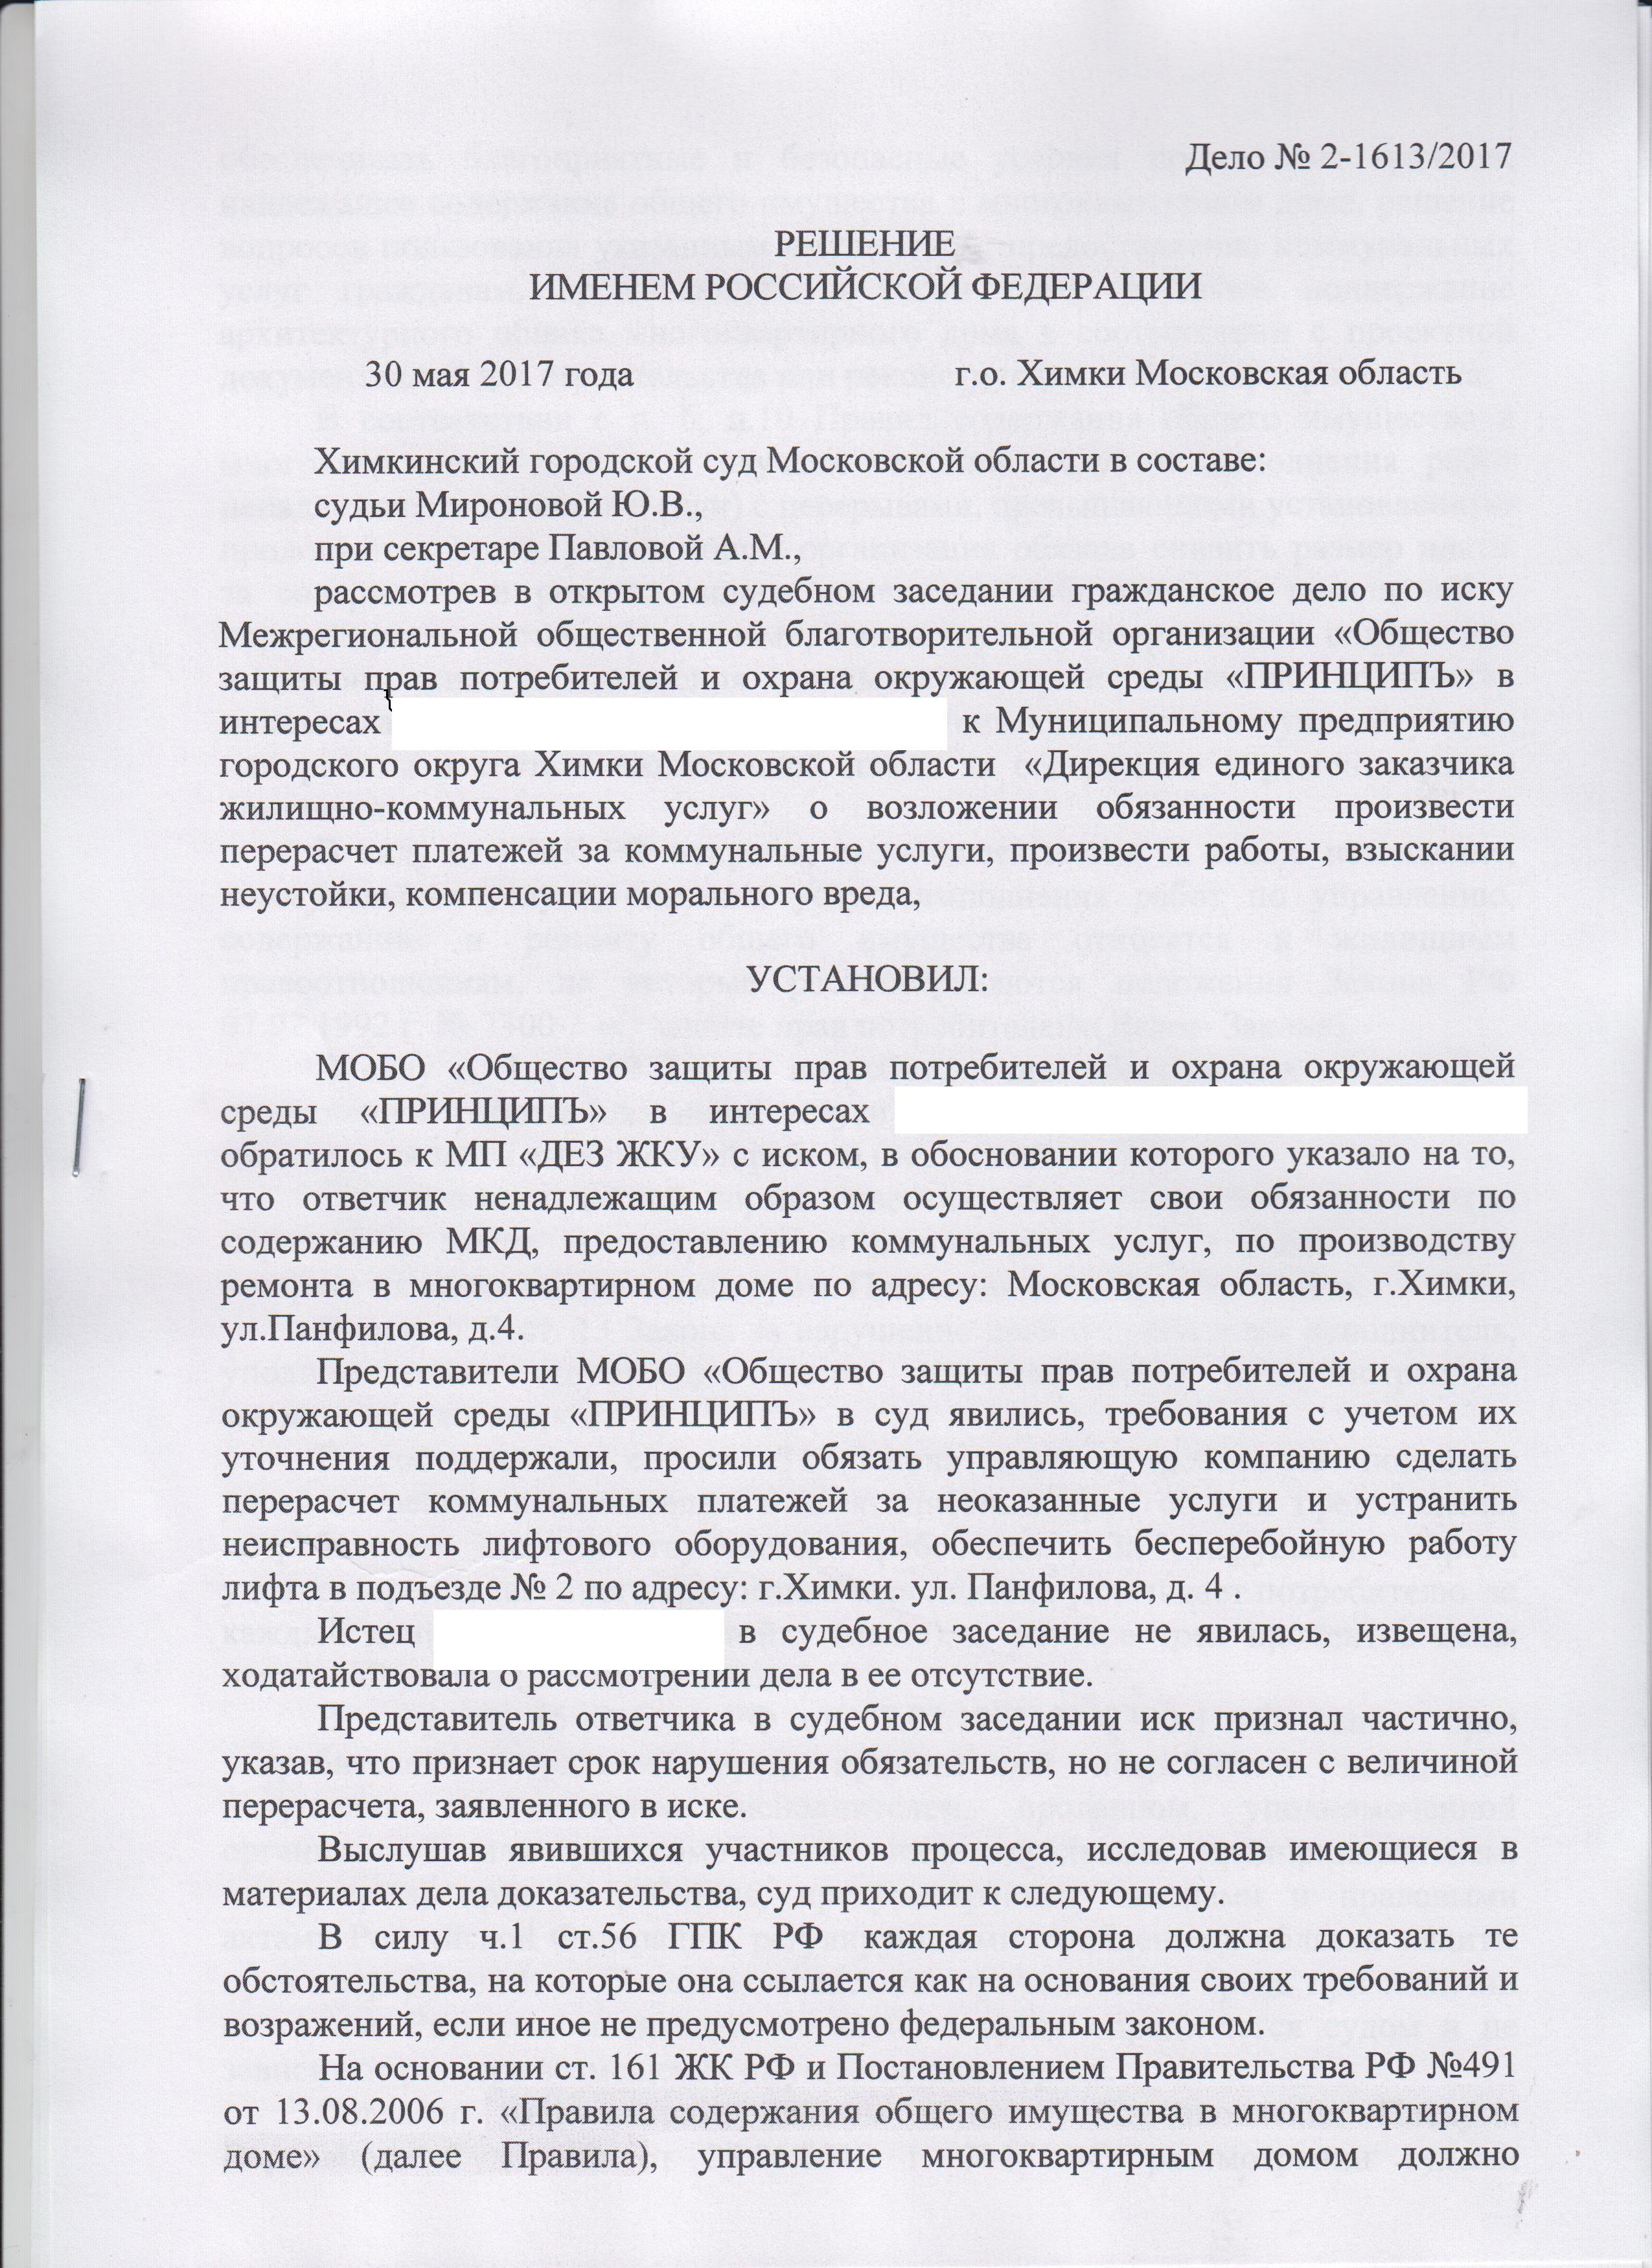 Сайт жуковского городского суда московской области